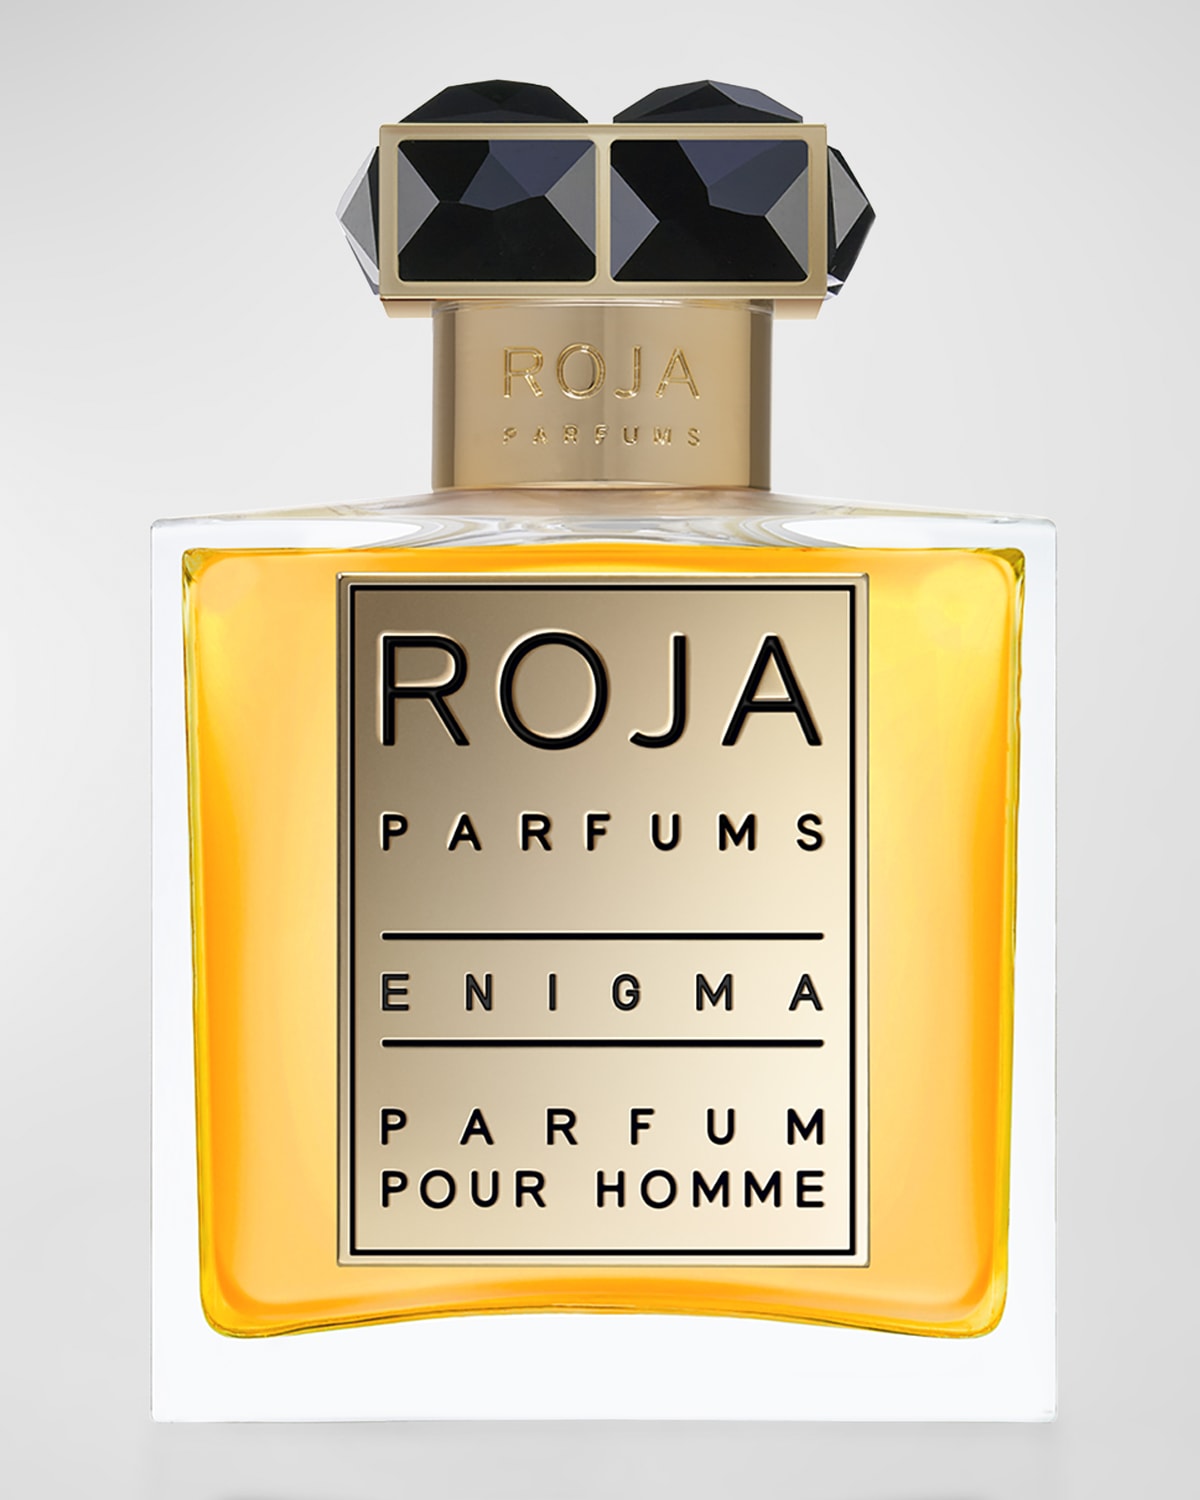 Enigma Parfum Pour Homme, 1.7 oz./ 50 ml